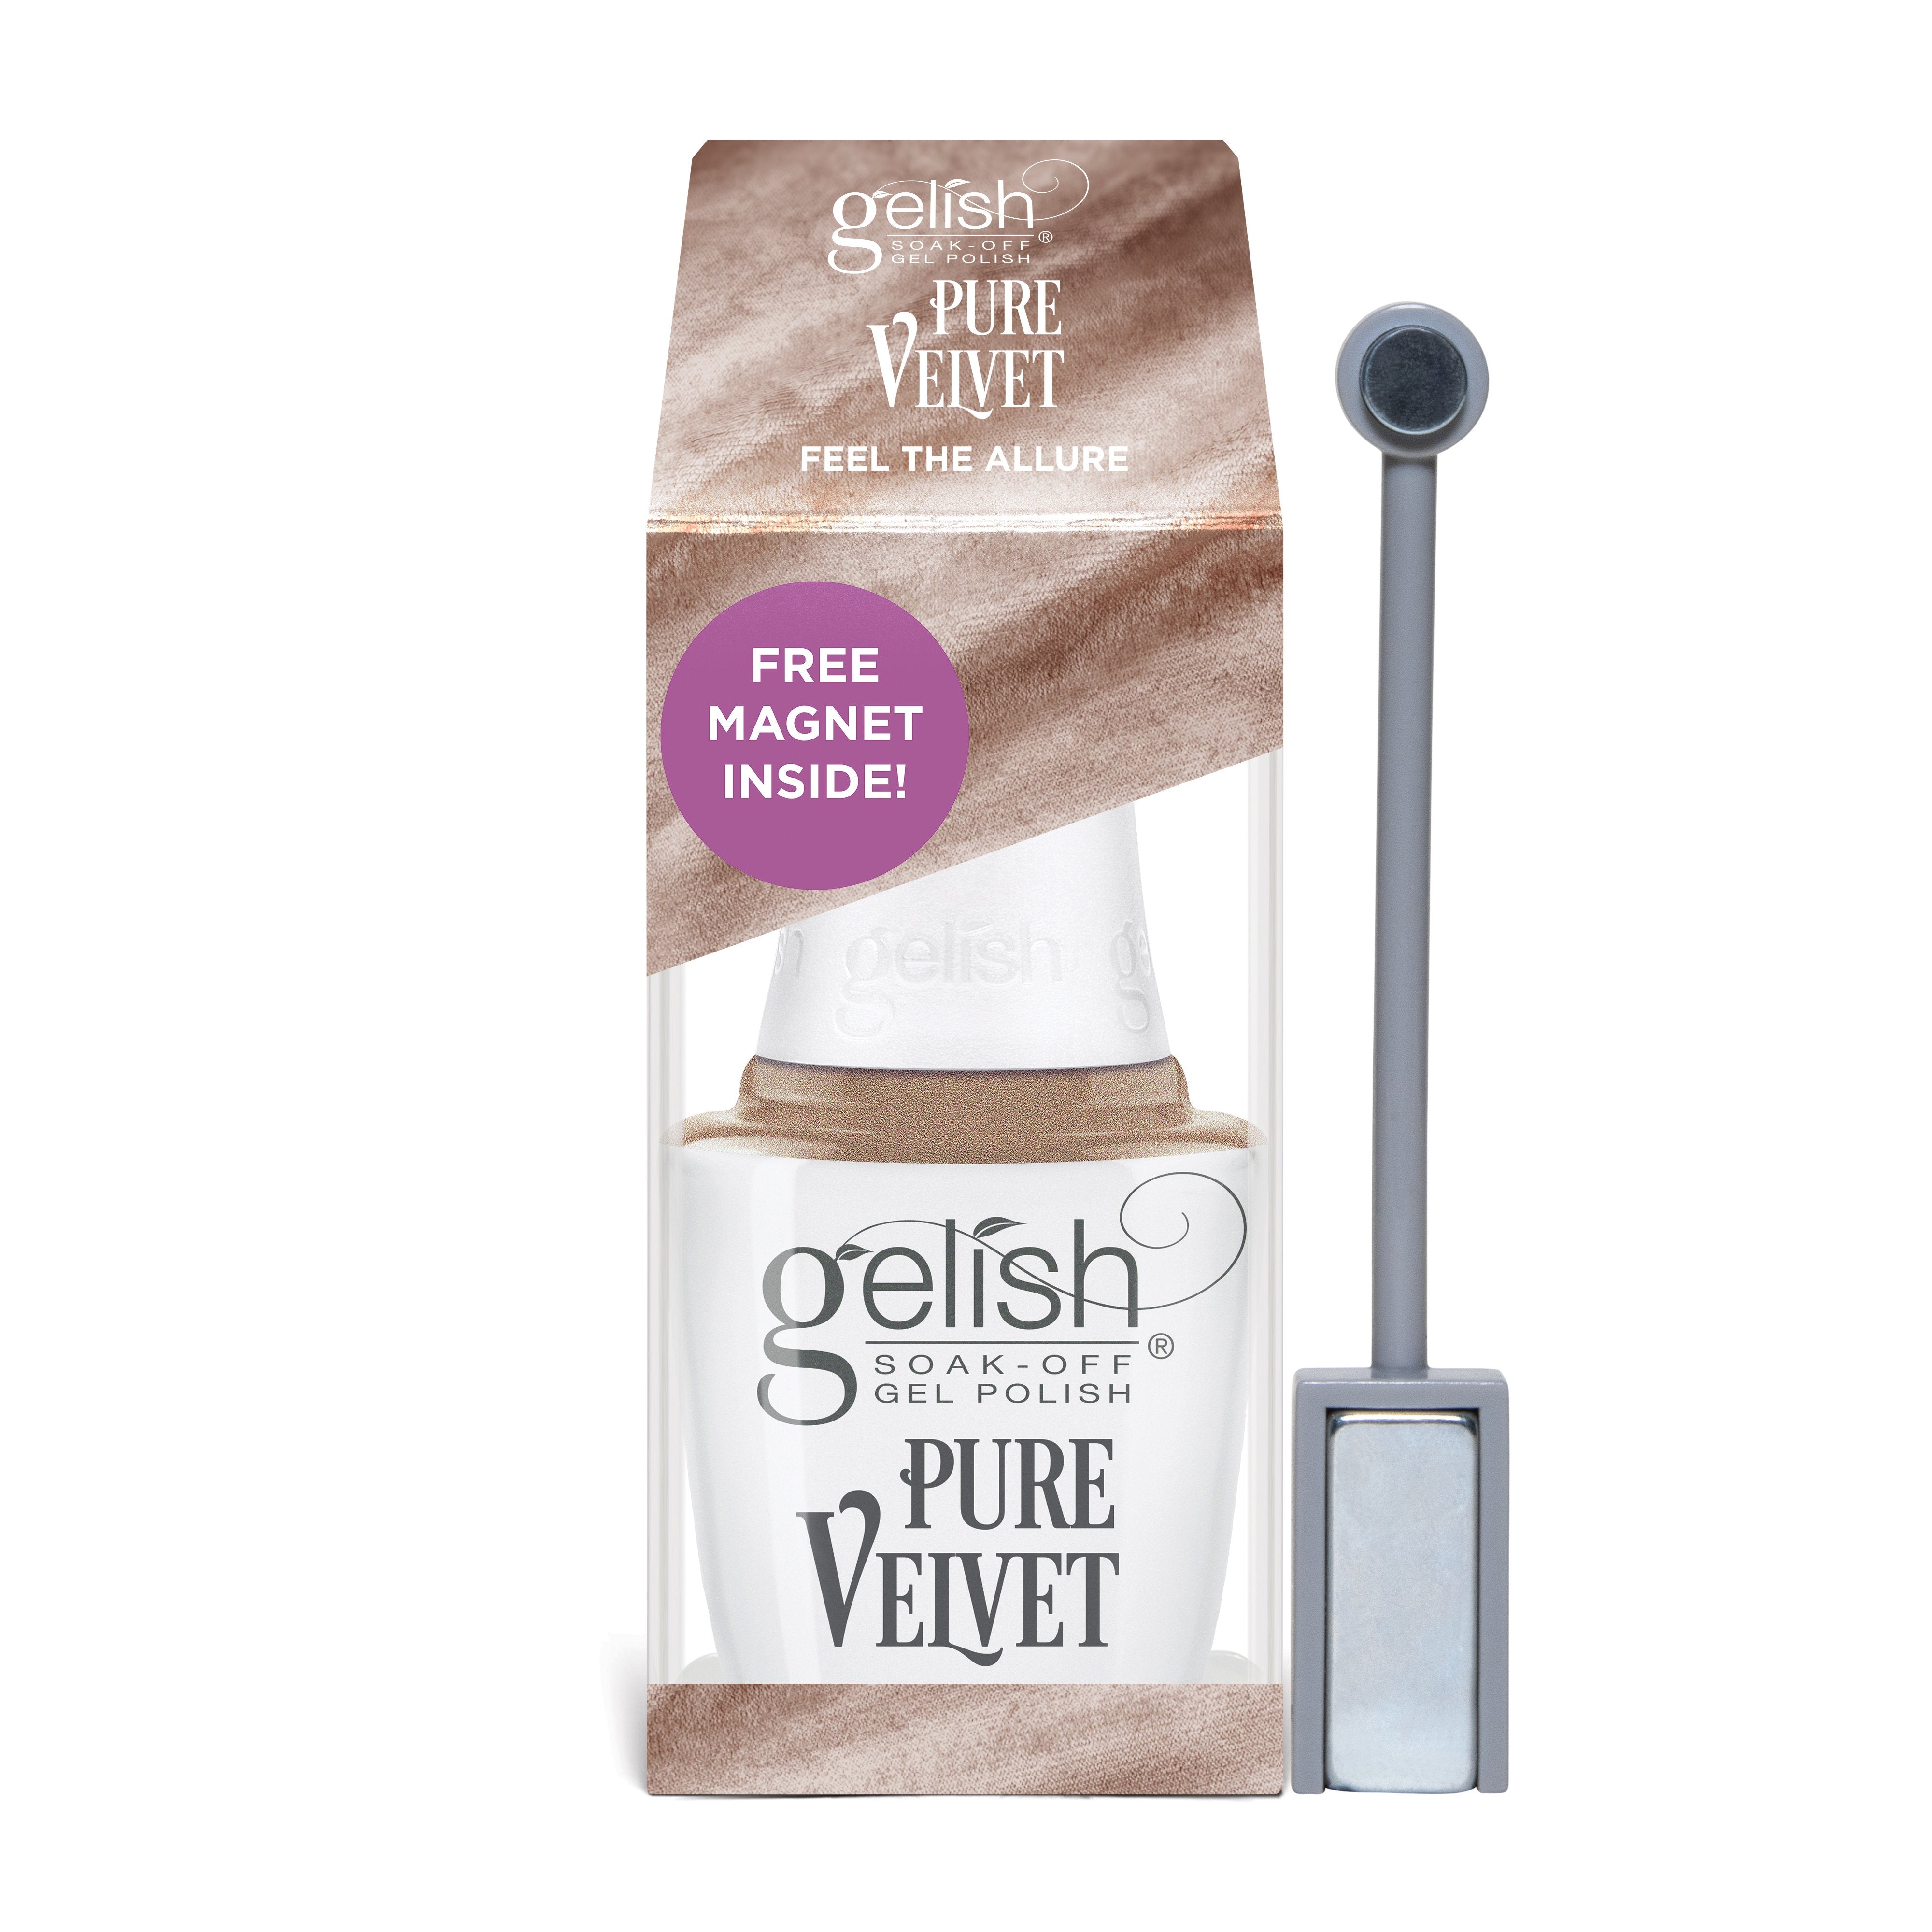 Gelish Pure Velvet - Feel the allure